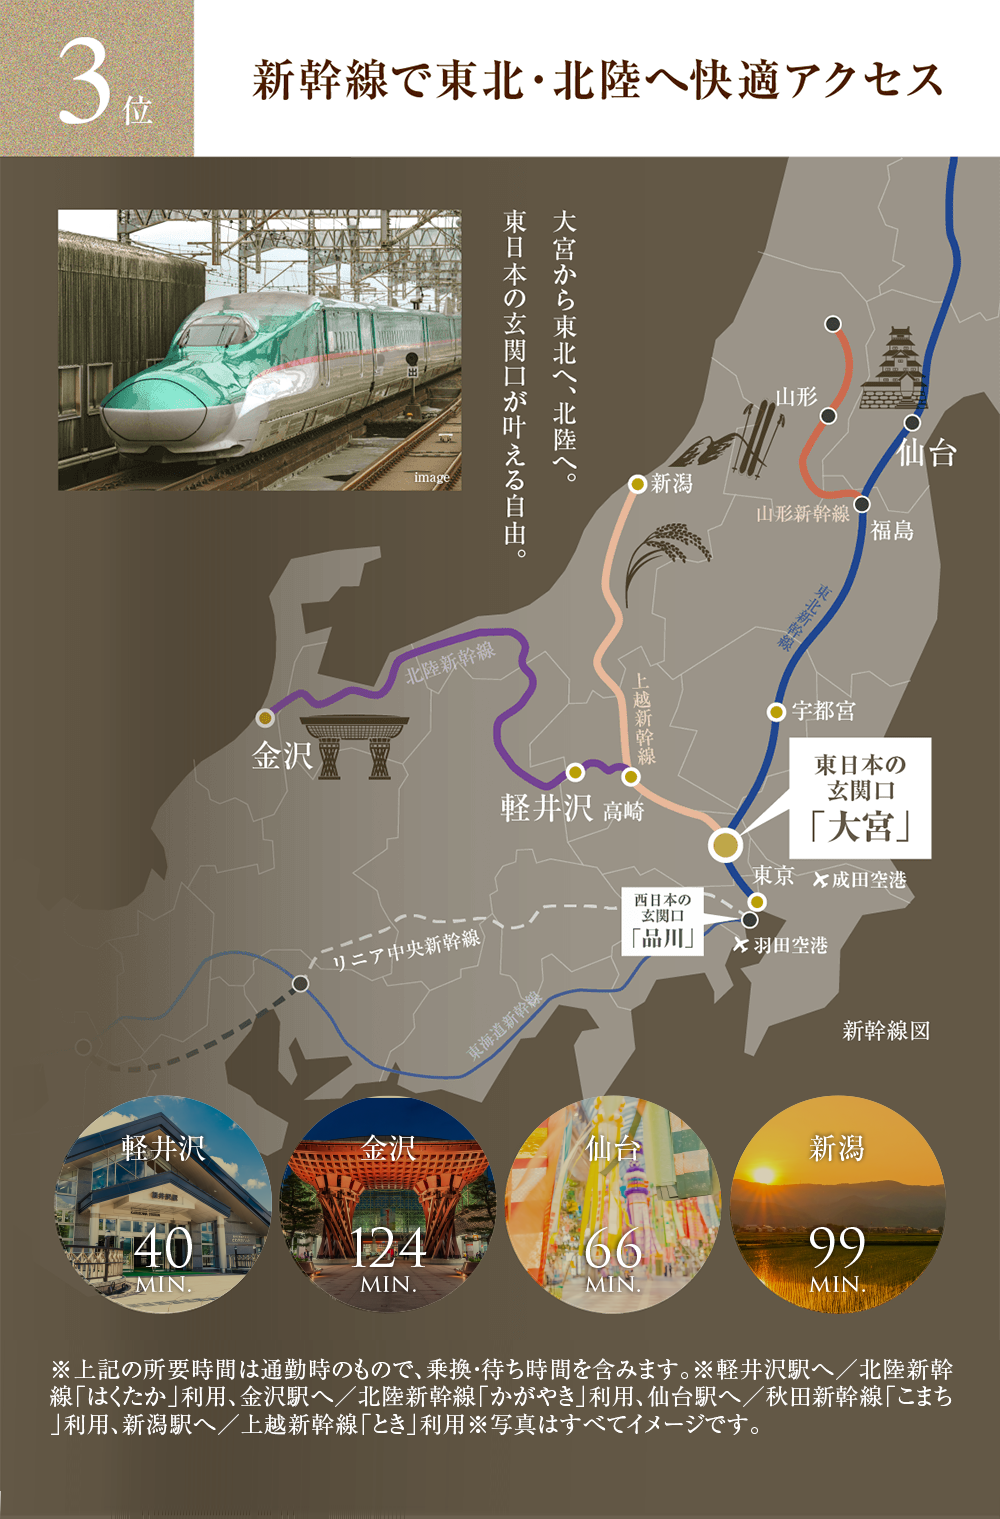 3位 新幹線で東北・北陸へ快適アクセス